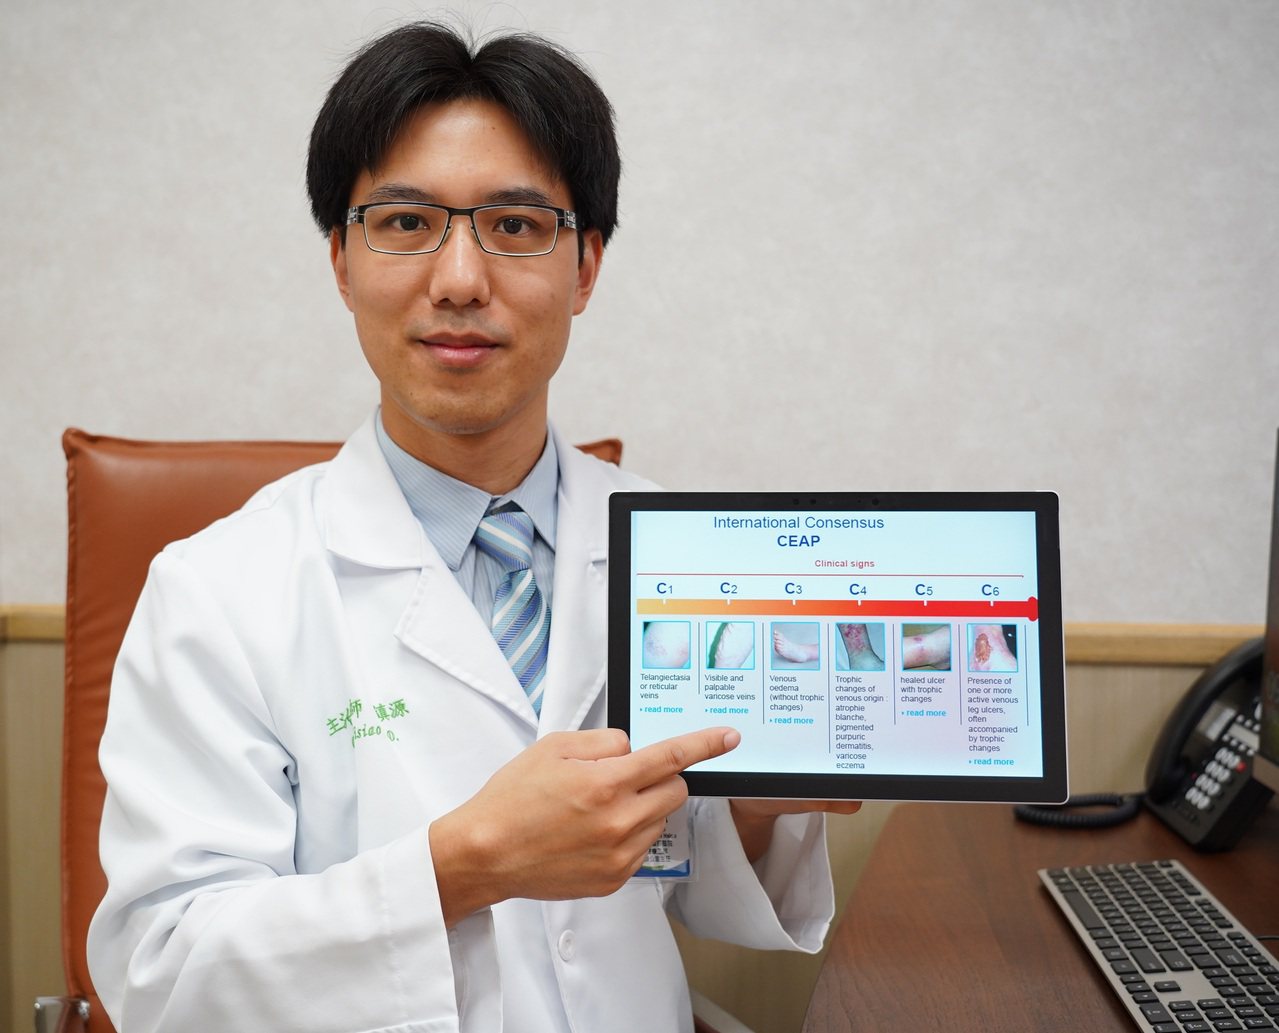 聯新國際醫院心臟血管外科主治醫師蕭鎮源分析靜脈曲張主要原因和最新治療方式。